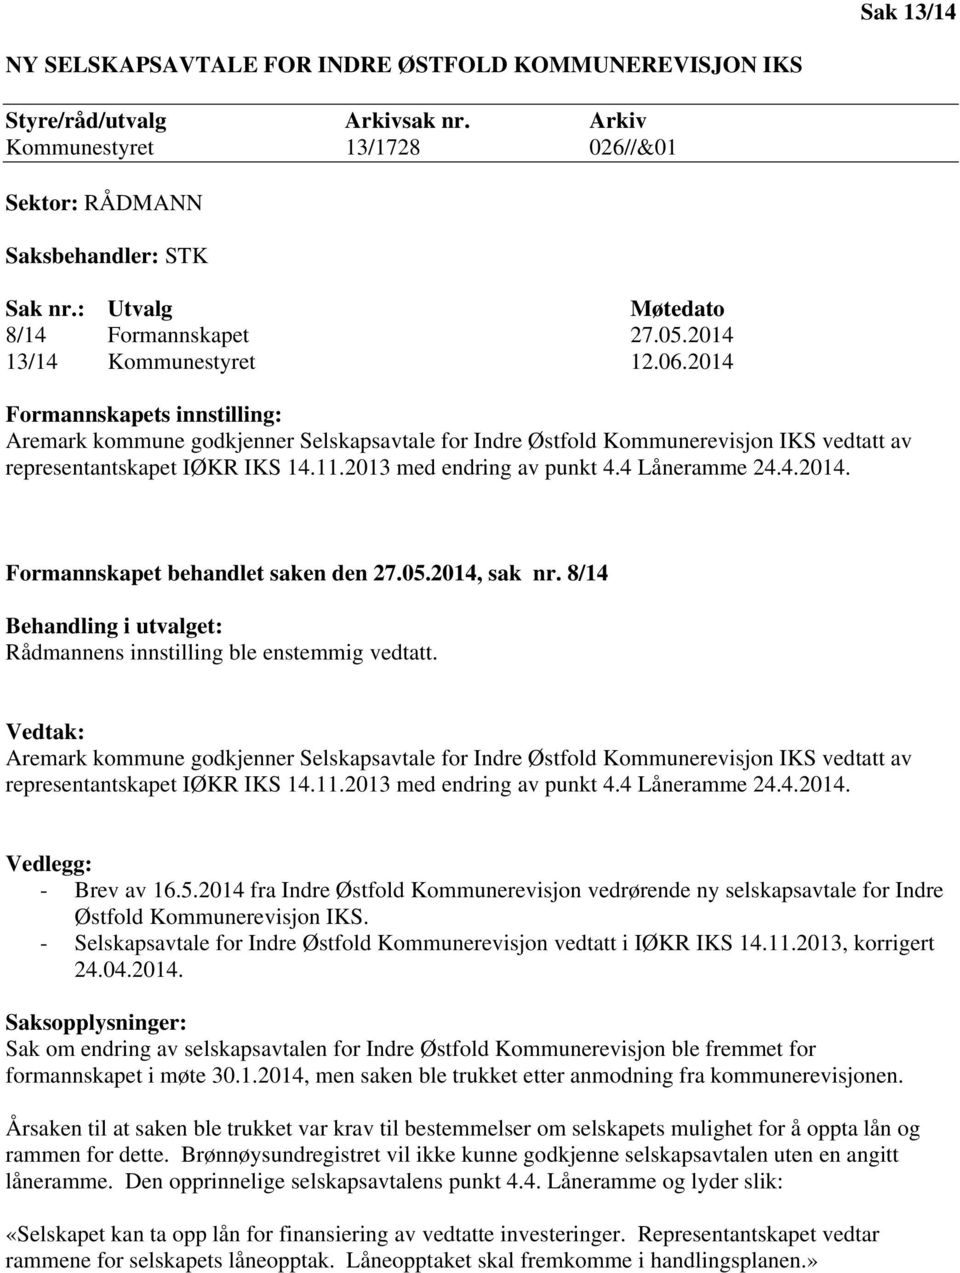 2014 Formannskapets innstilling: Aremark kommune godkjenner Selskapsavtale for Indre Østfold Kommunerevisjon IKS vedtatt av representantskapet IØKR IKS 14.11.2013 med endring av punkt 4.